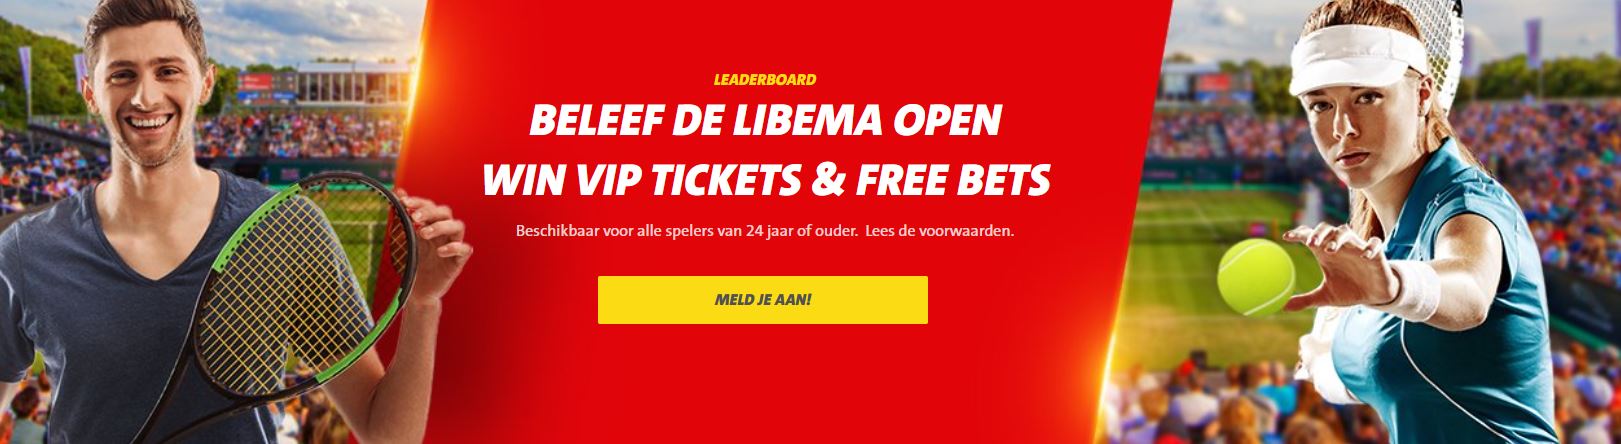 Libema Open VIP-arrangement